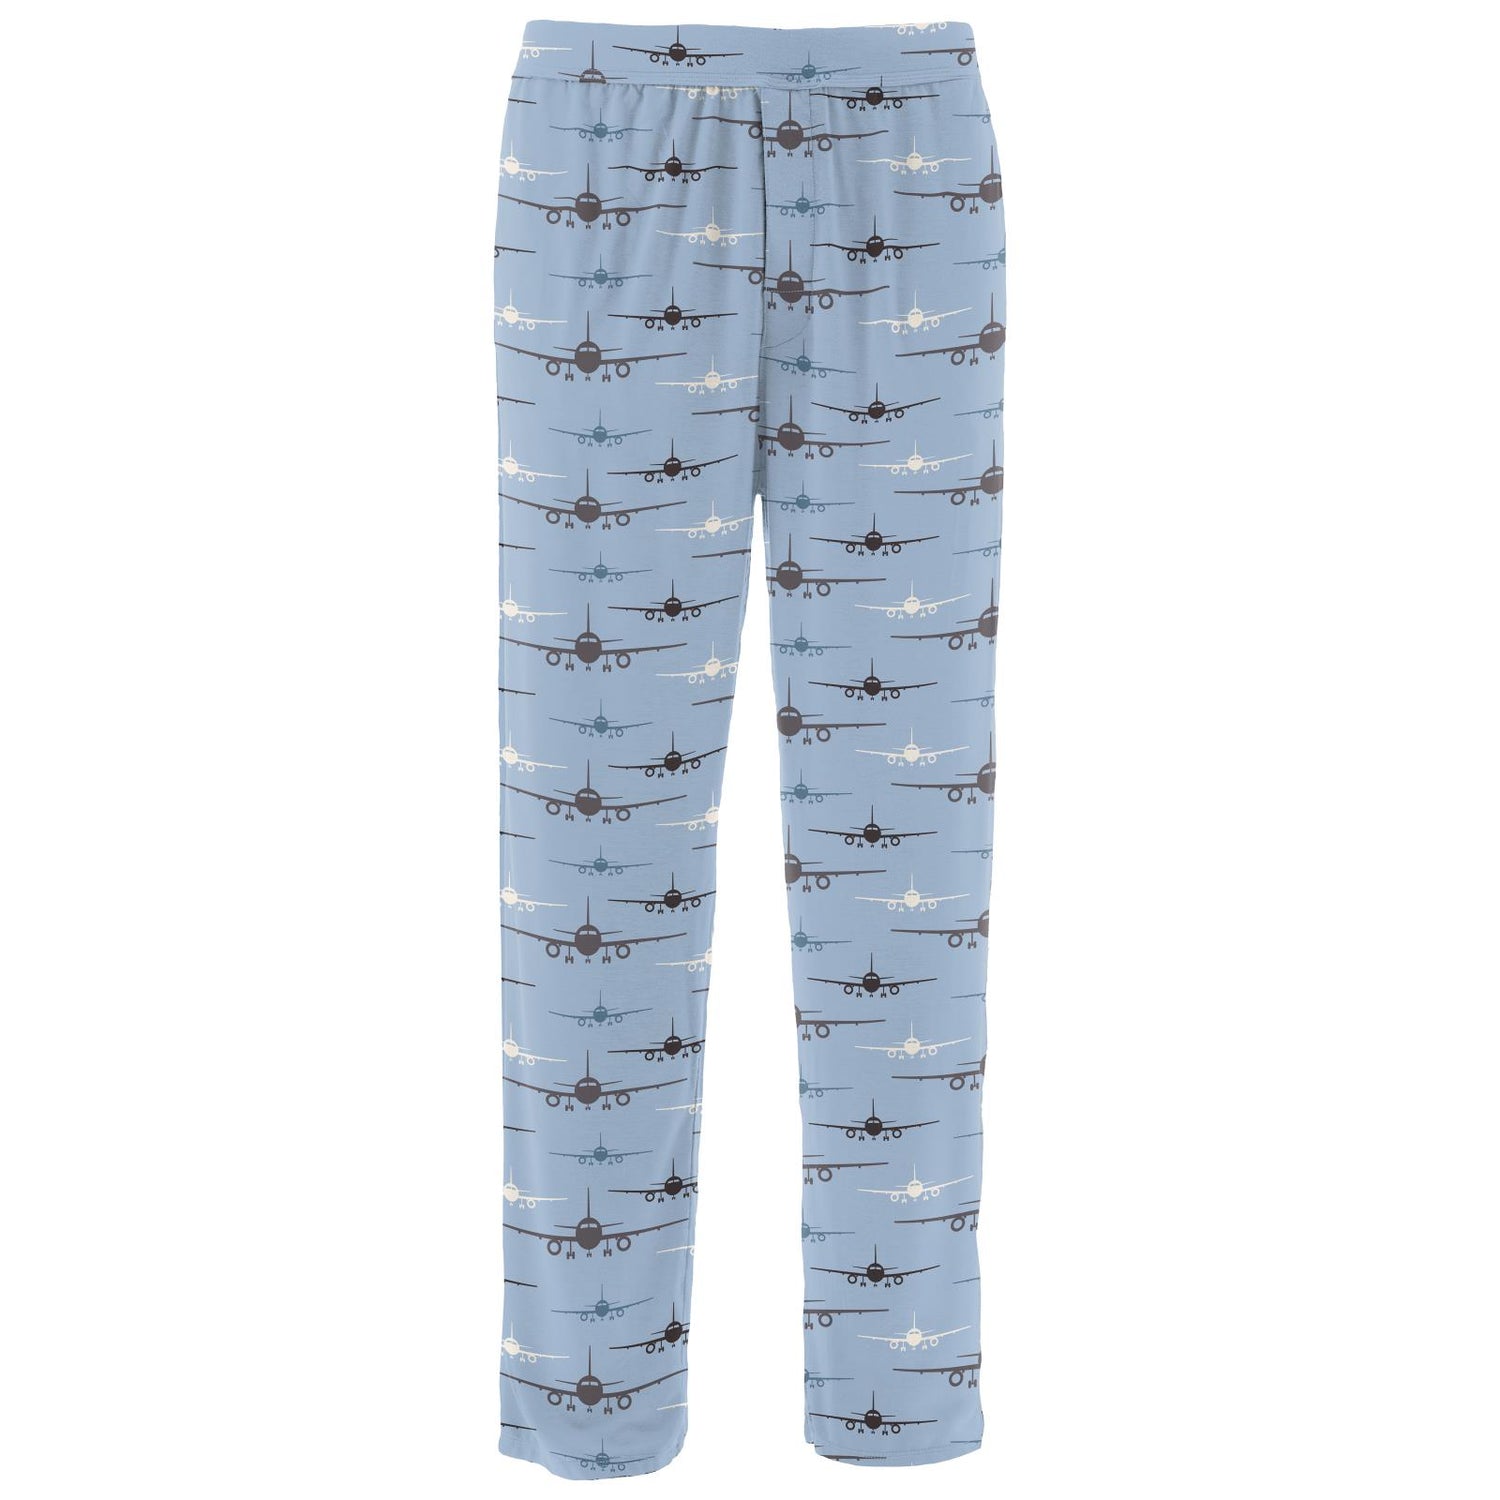 Men's Print Pajama Pants in Pond Airplanes